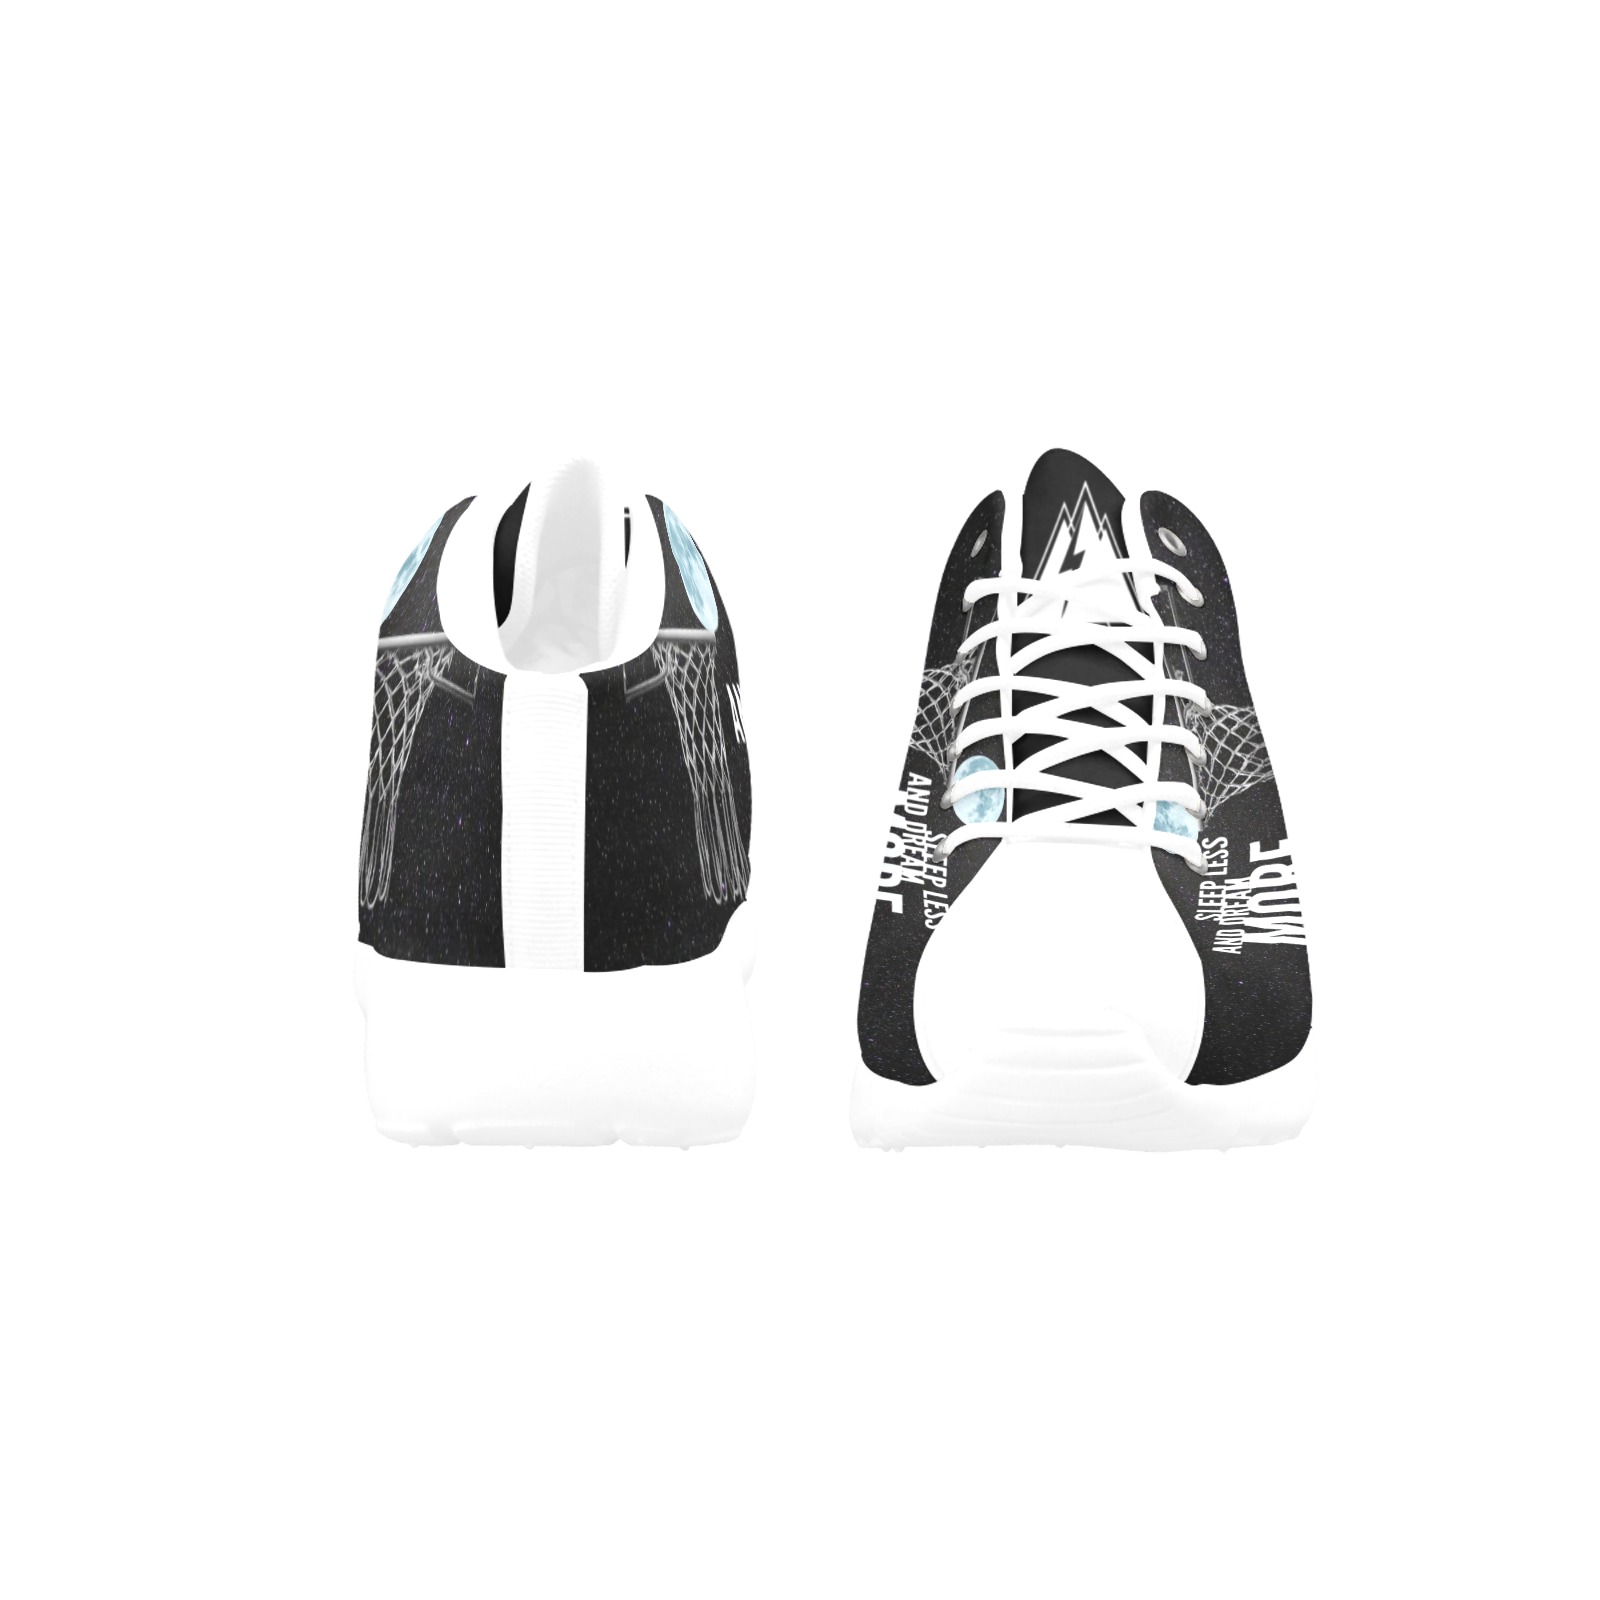 Dream More Men's Basketball Training Shoes (Model 47502)